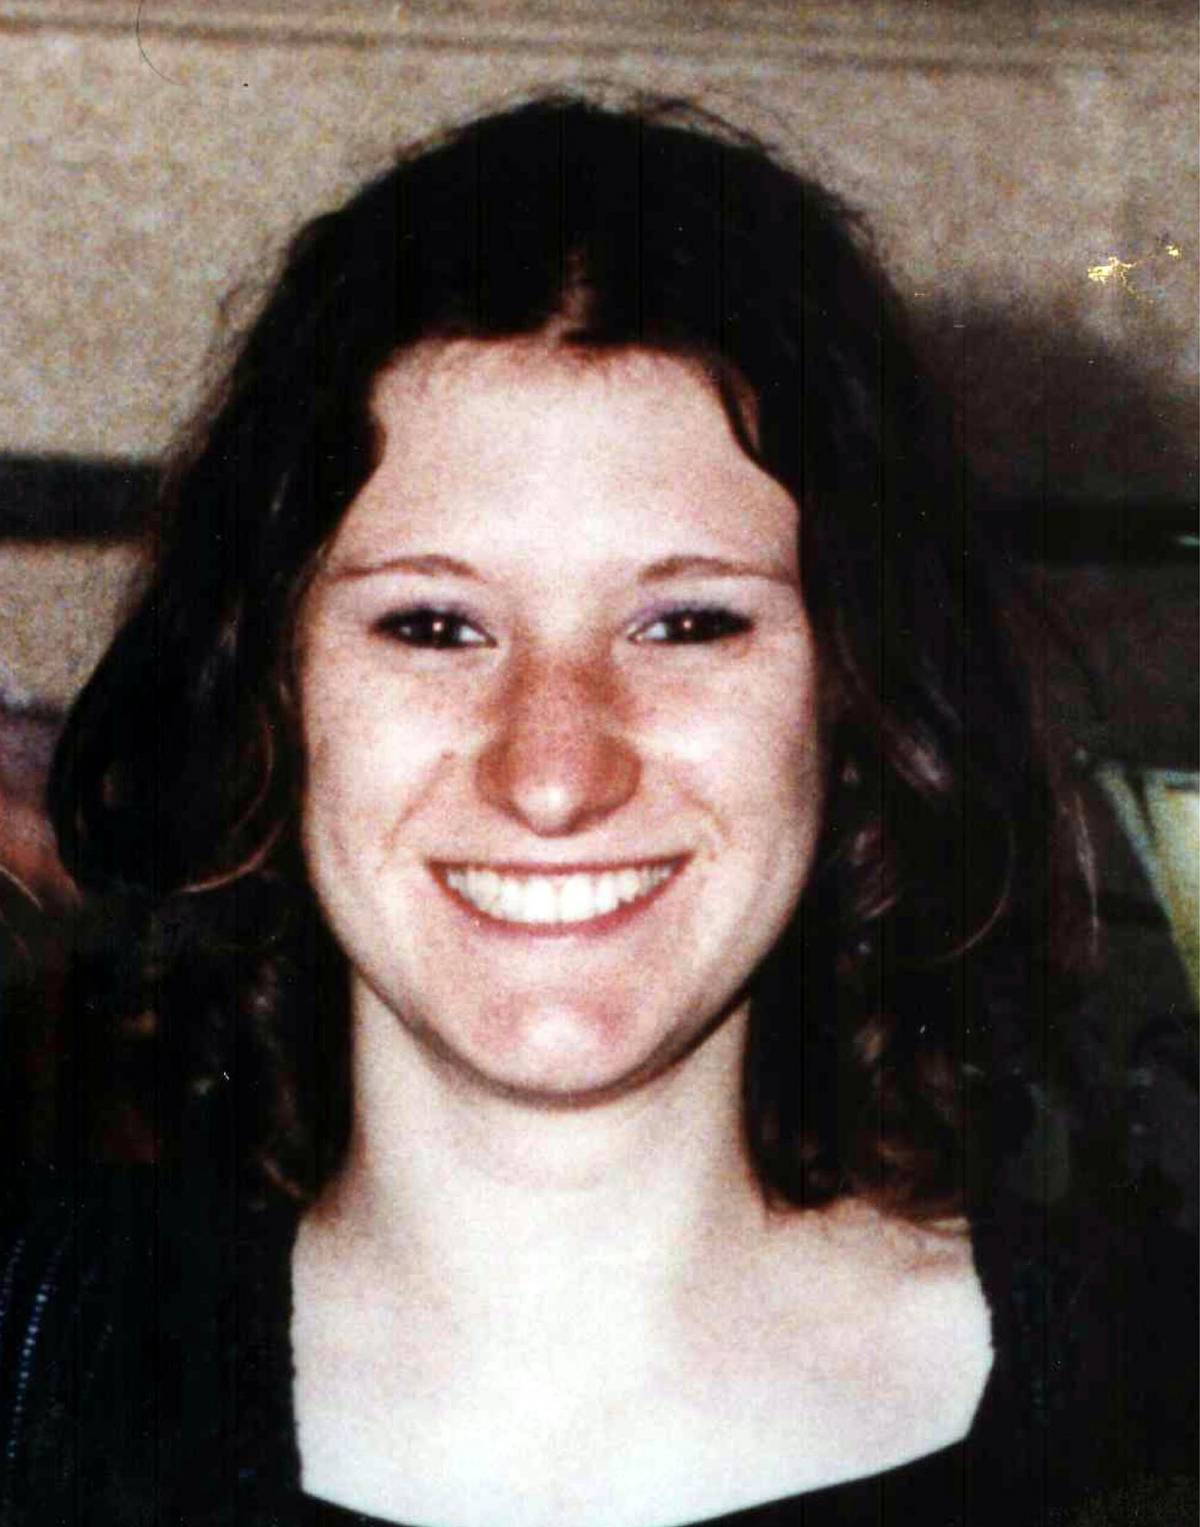 Delitto Serena Mollicone,  
a 10 anni dall'omicidio 
indagati l'ex e sua madre